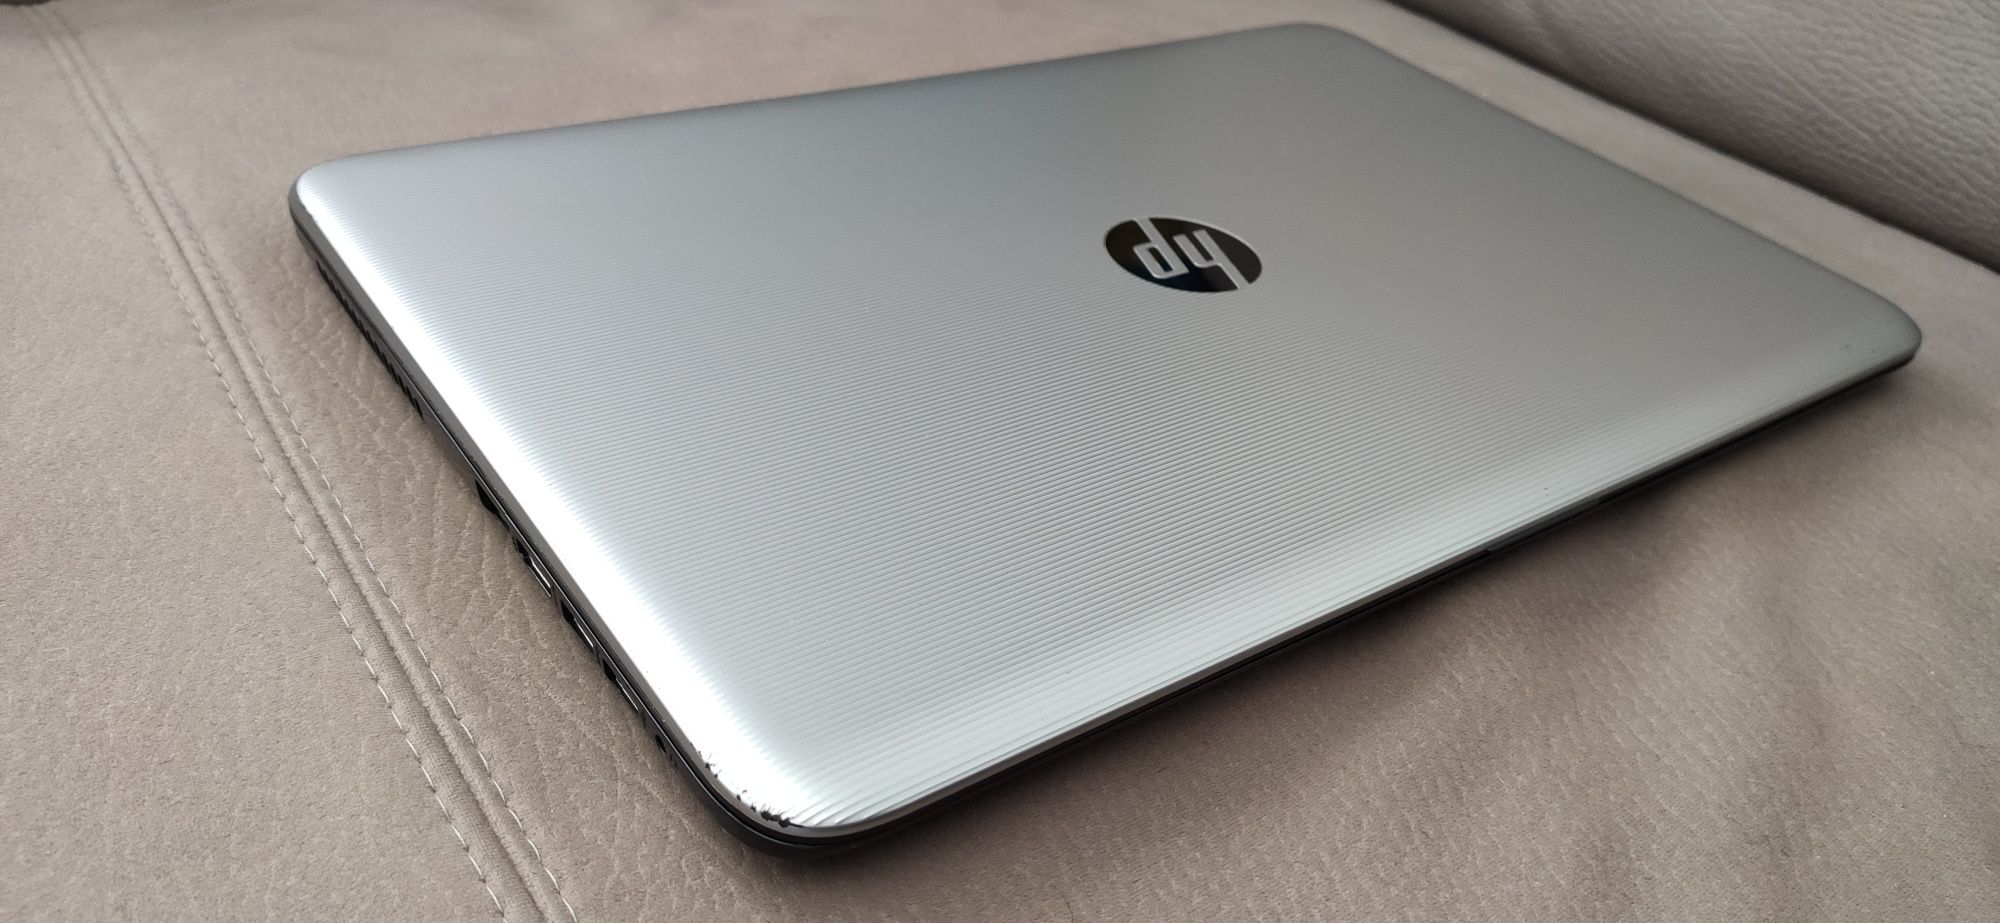 Ноутбук HP i5-7200U DDR4